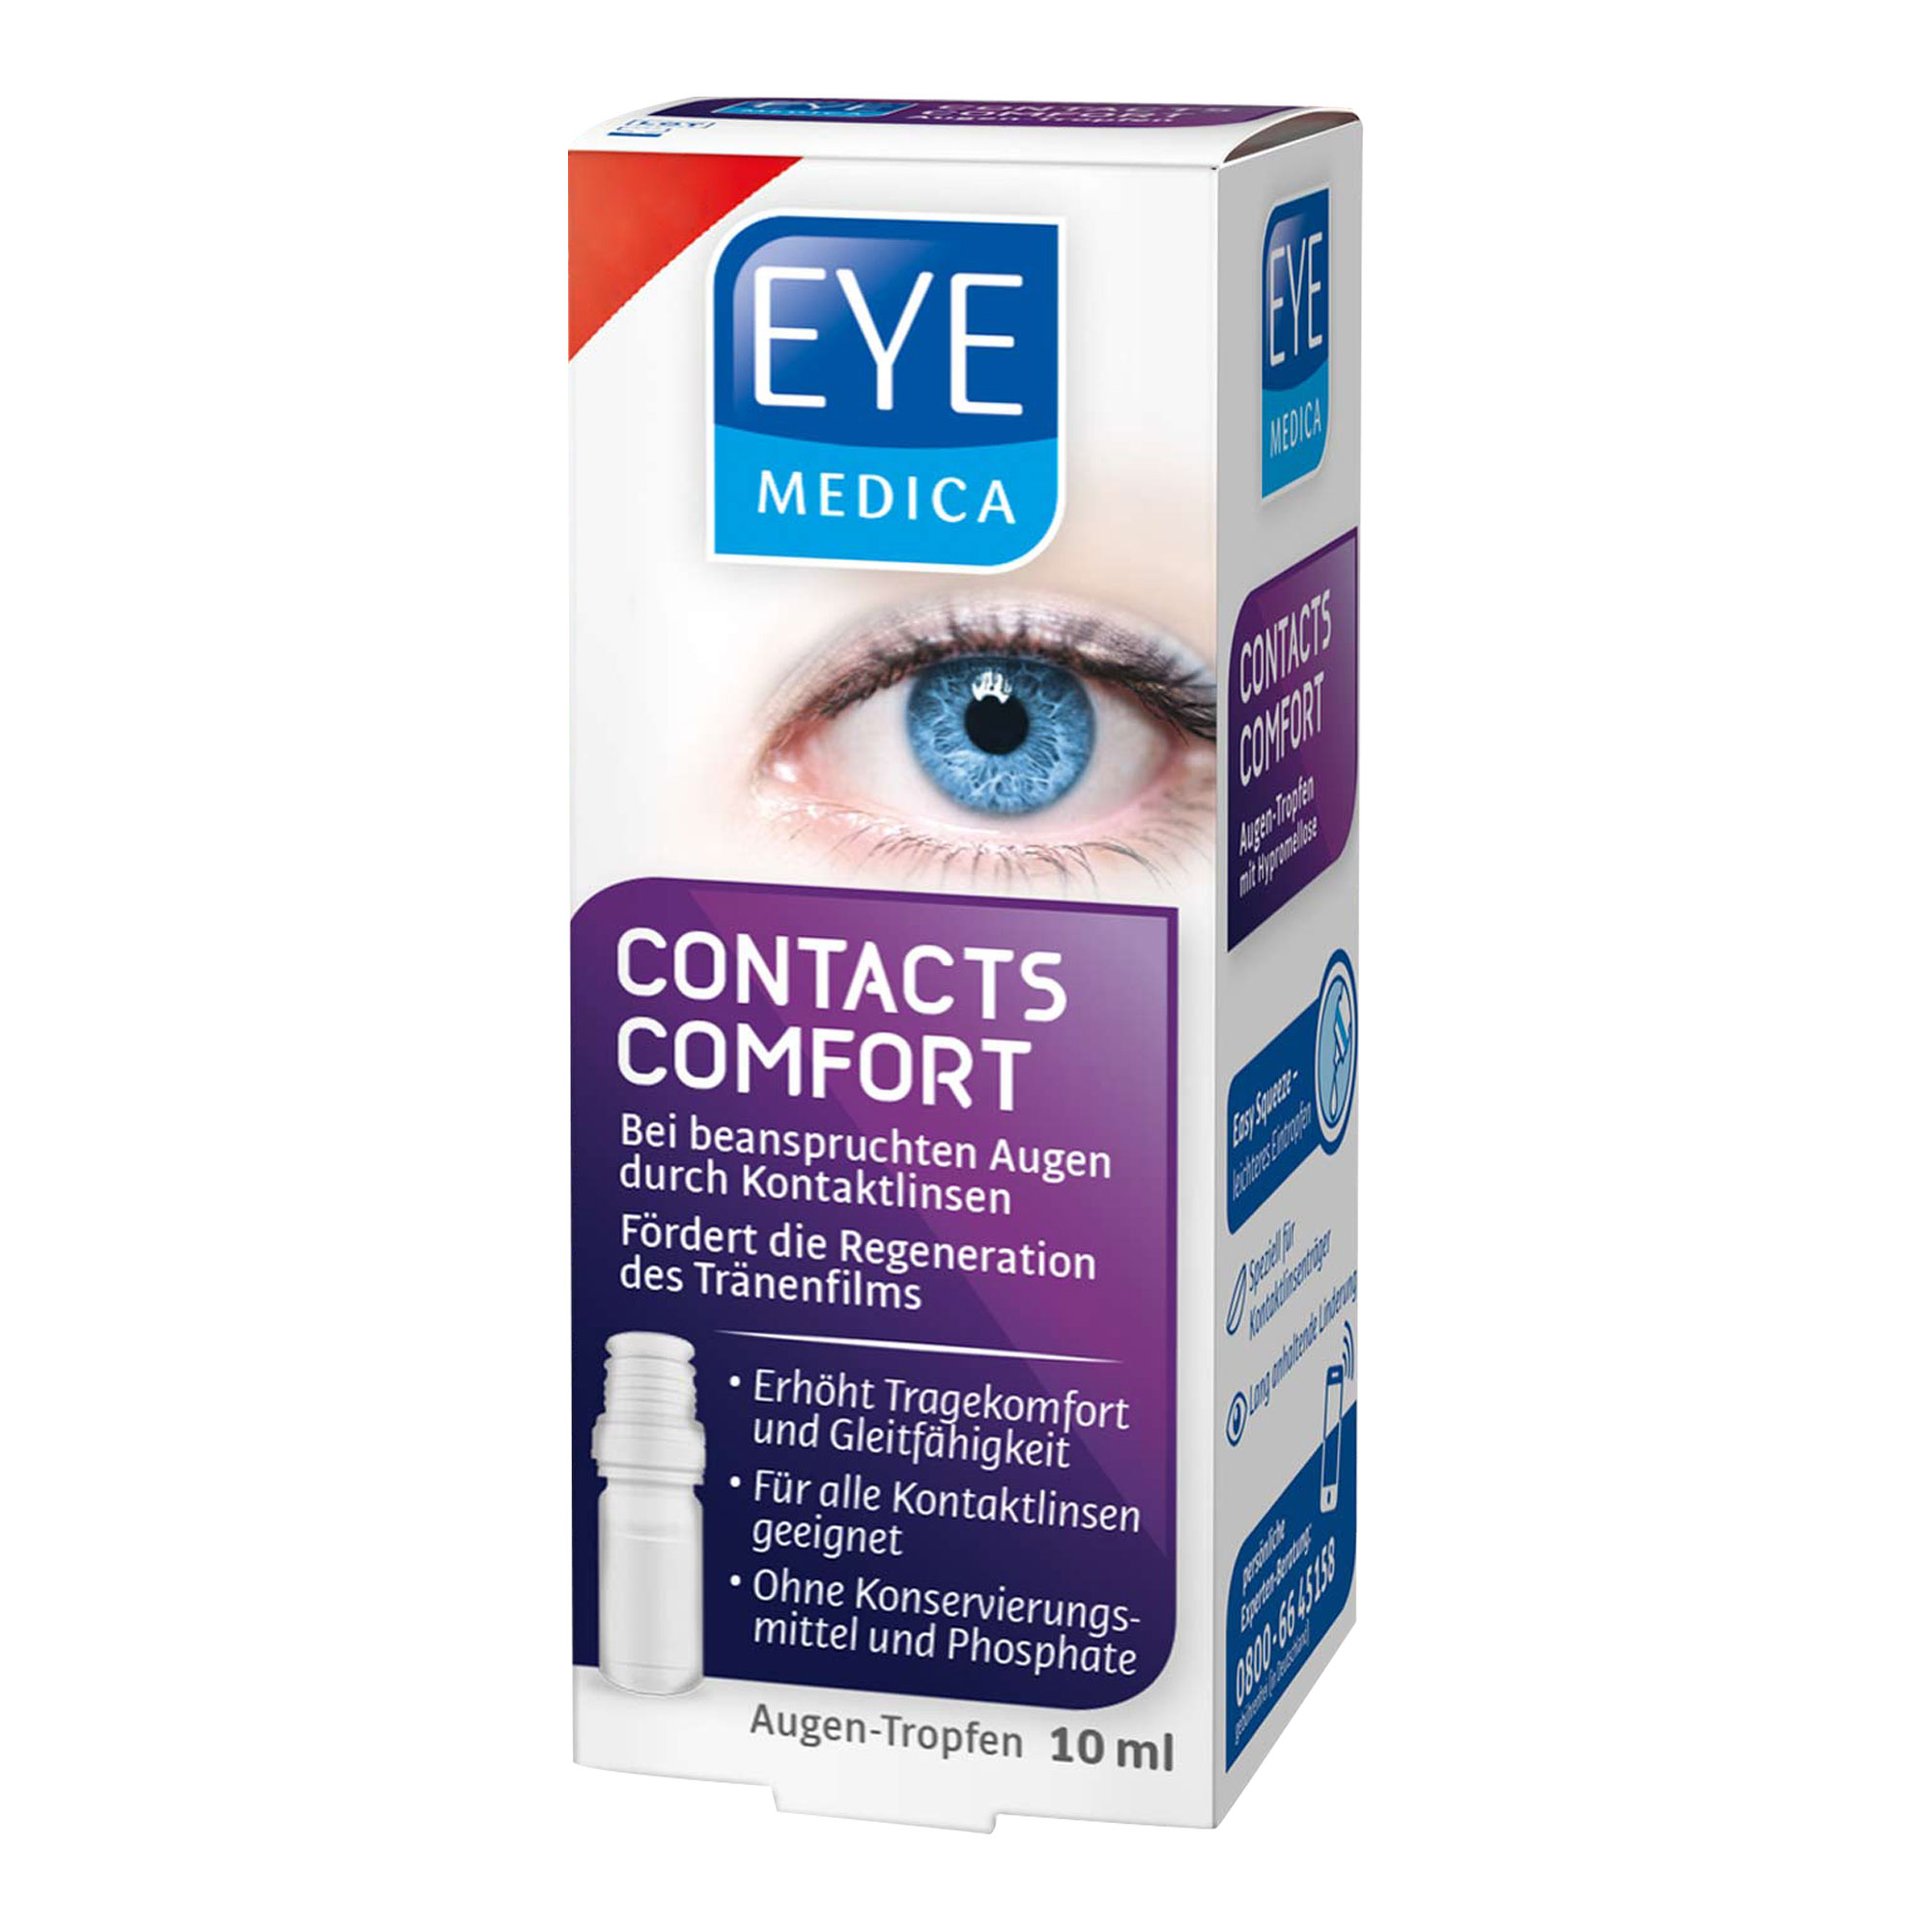 Medizinprodukt zur Anwendung bei beanspruchten Augen durch Kontaktlinsen.